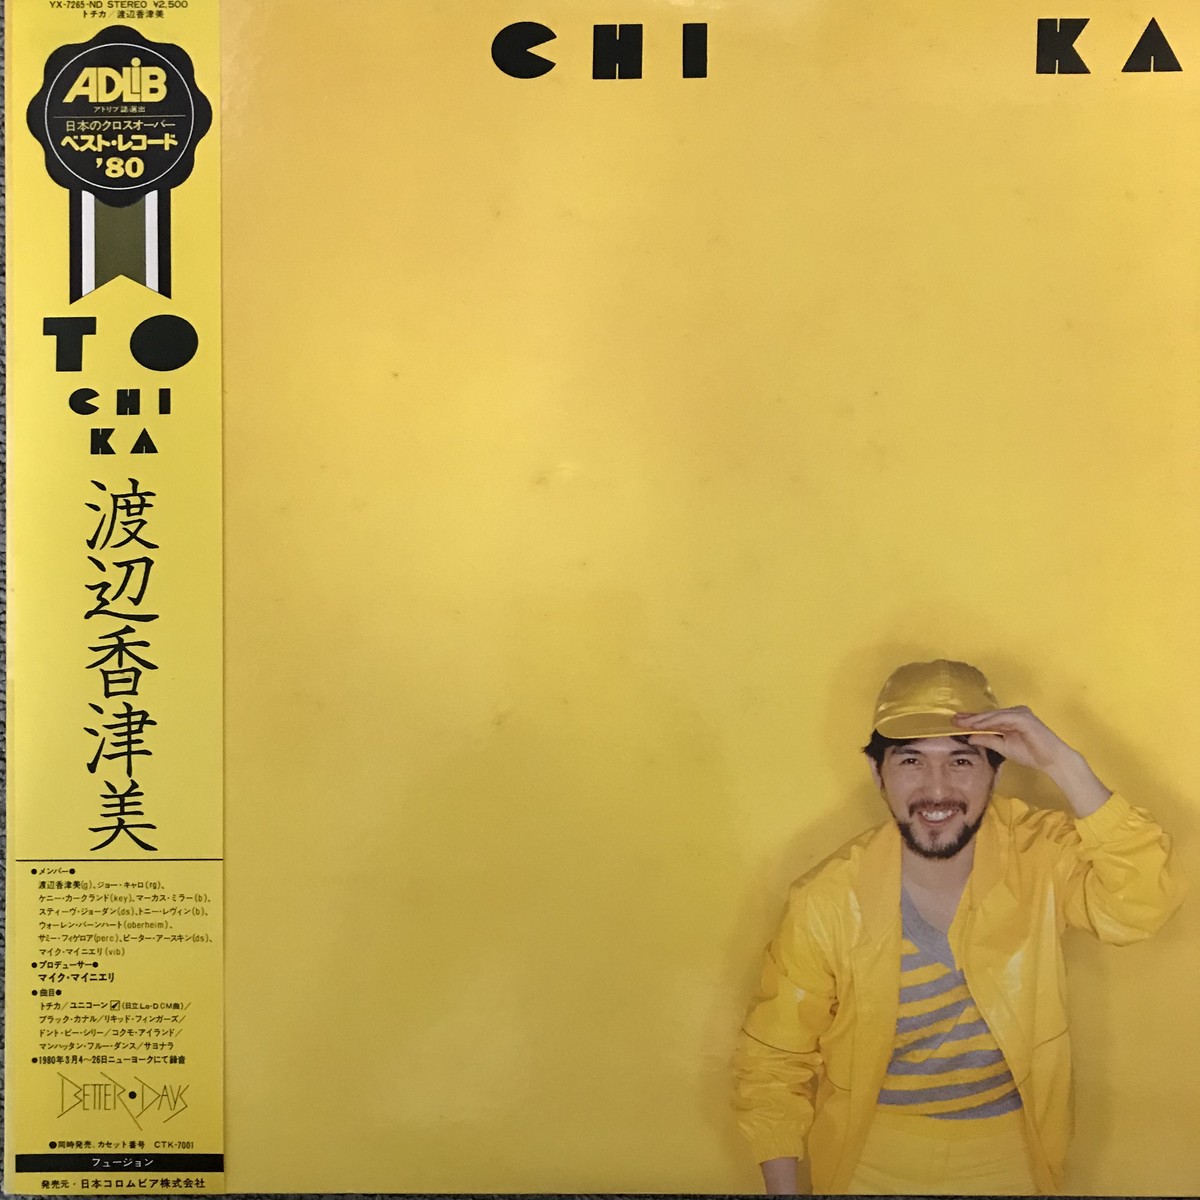 渡辺香津美 To Chi Ka Passtime Records パスタイム レコード